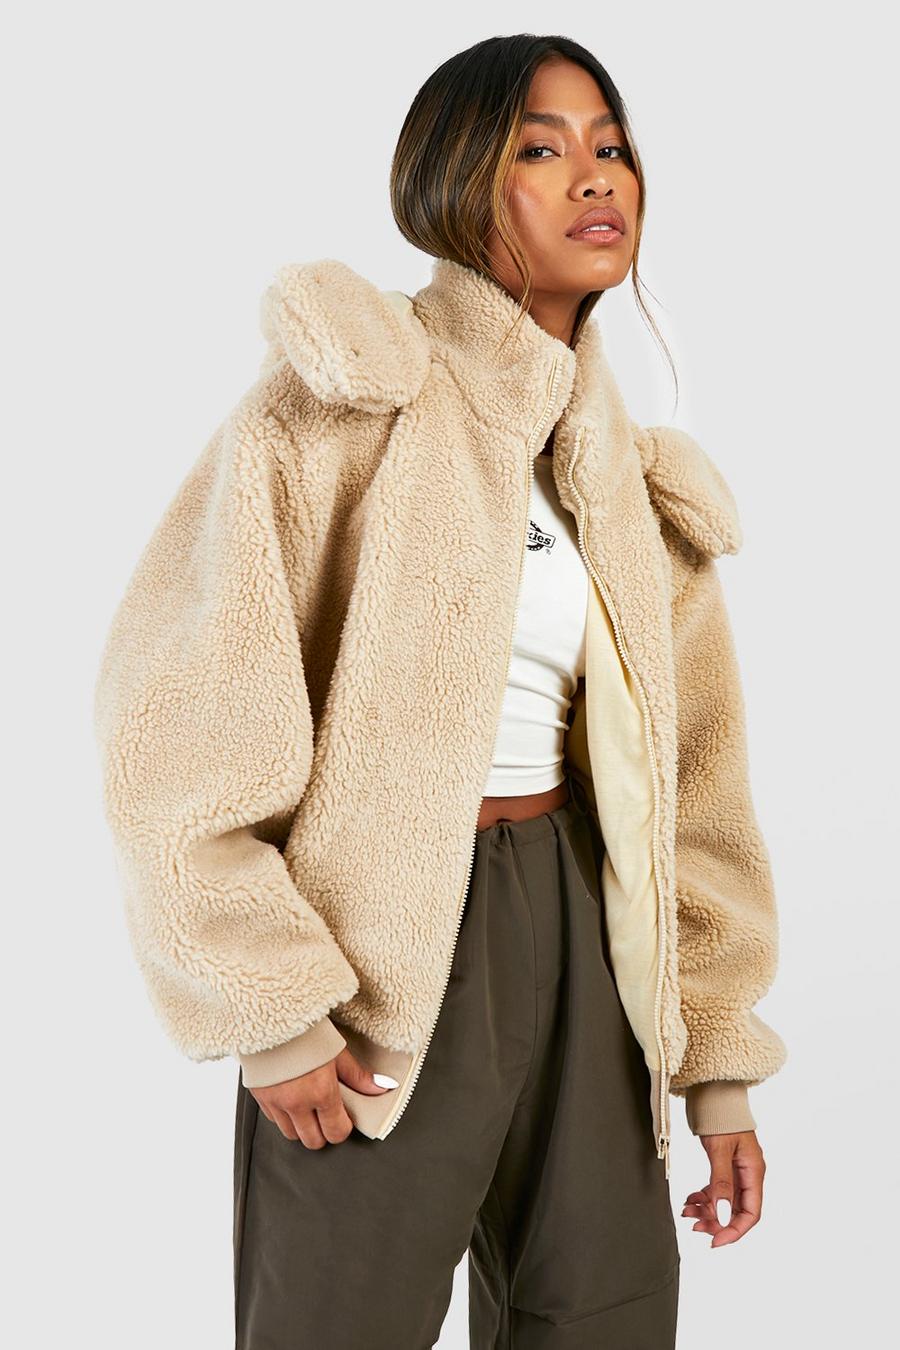 Women Fluffy Teddy Bear Fleece Coat Collared Zip Jacket Outwear